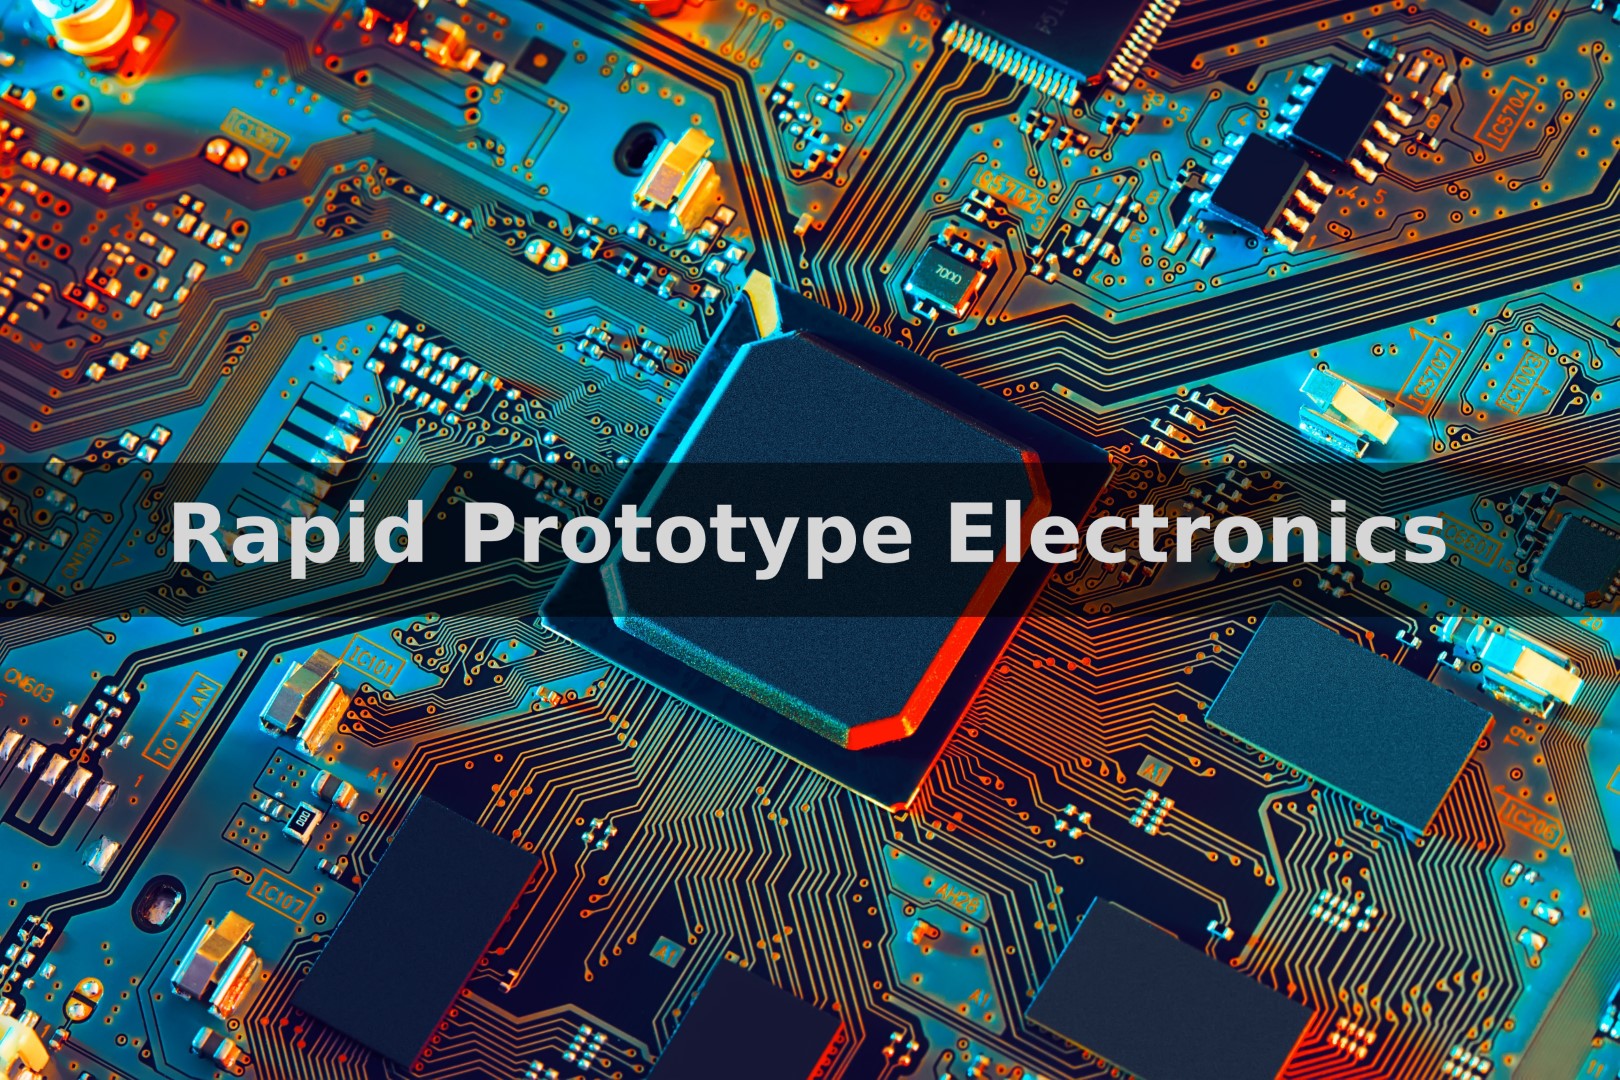 Rapid Prototype Electronics Design